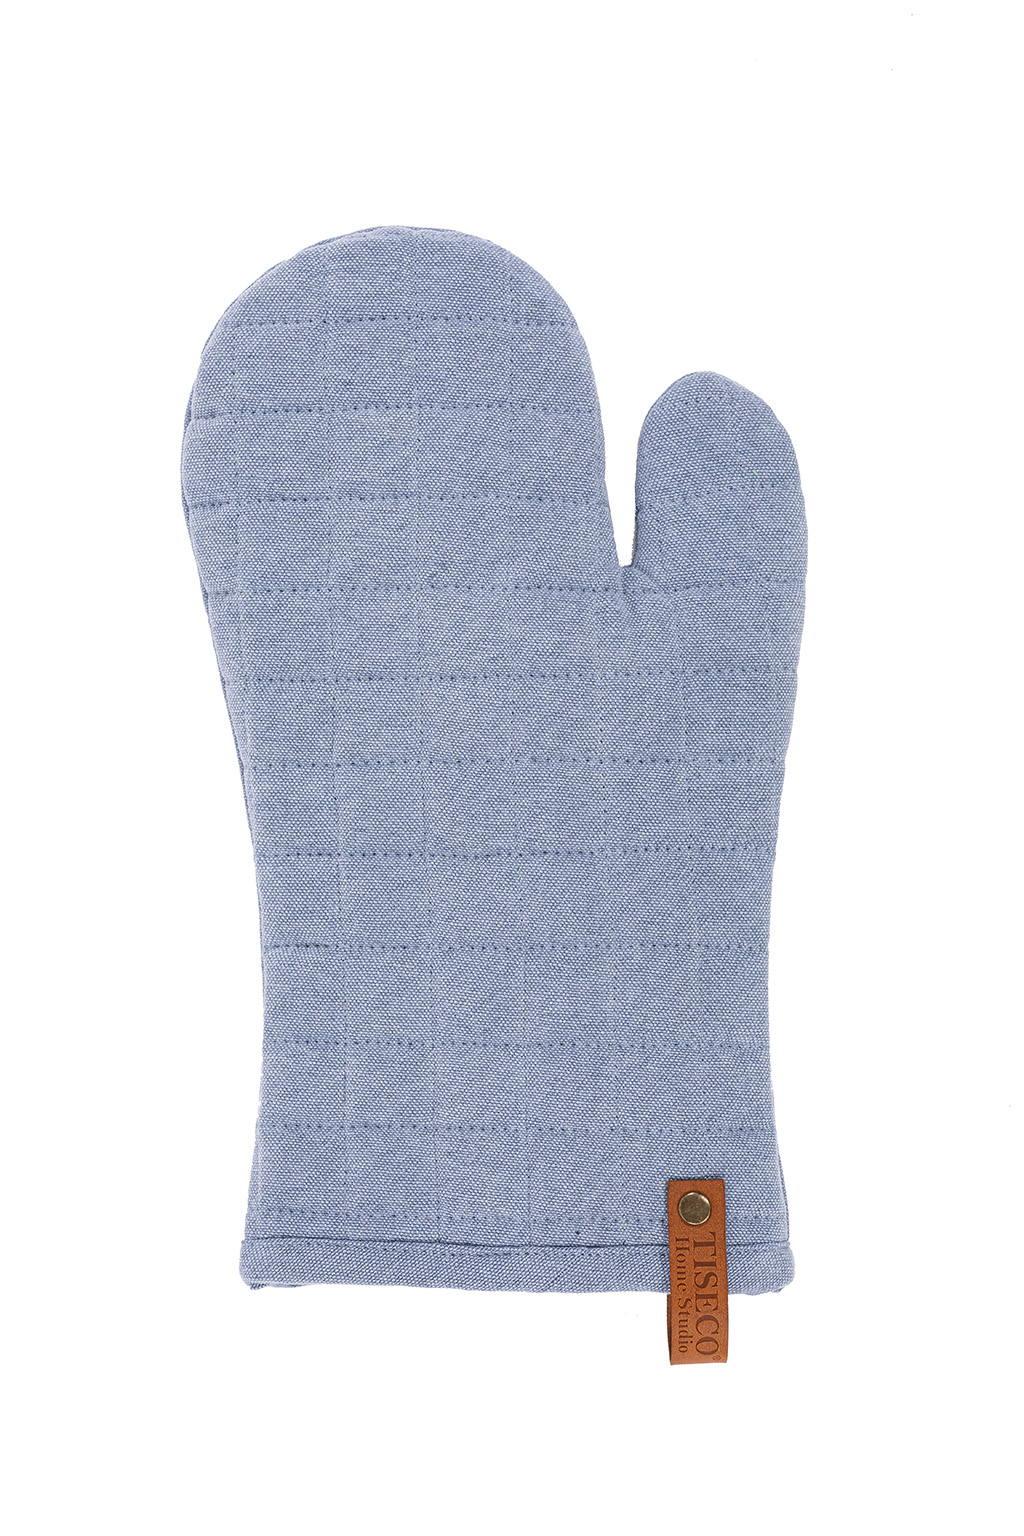 Glove HAVANA 18x32cm, stone blue